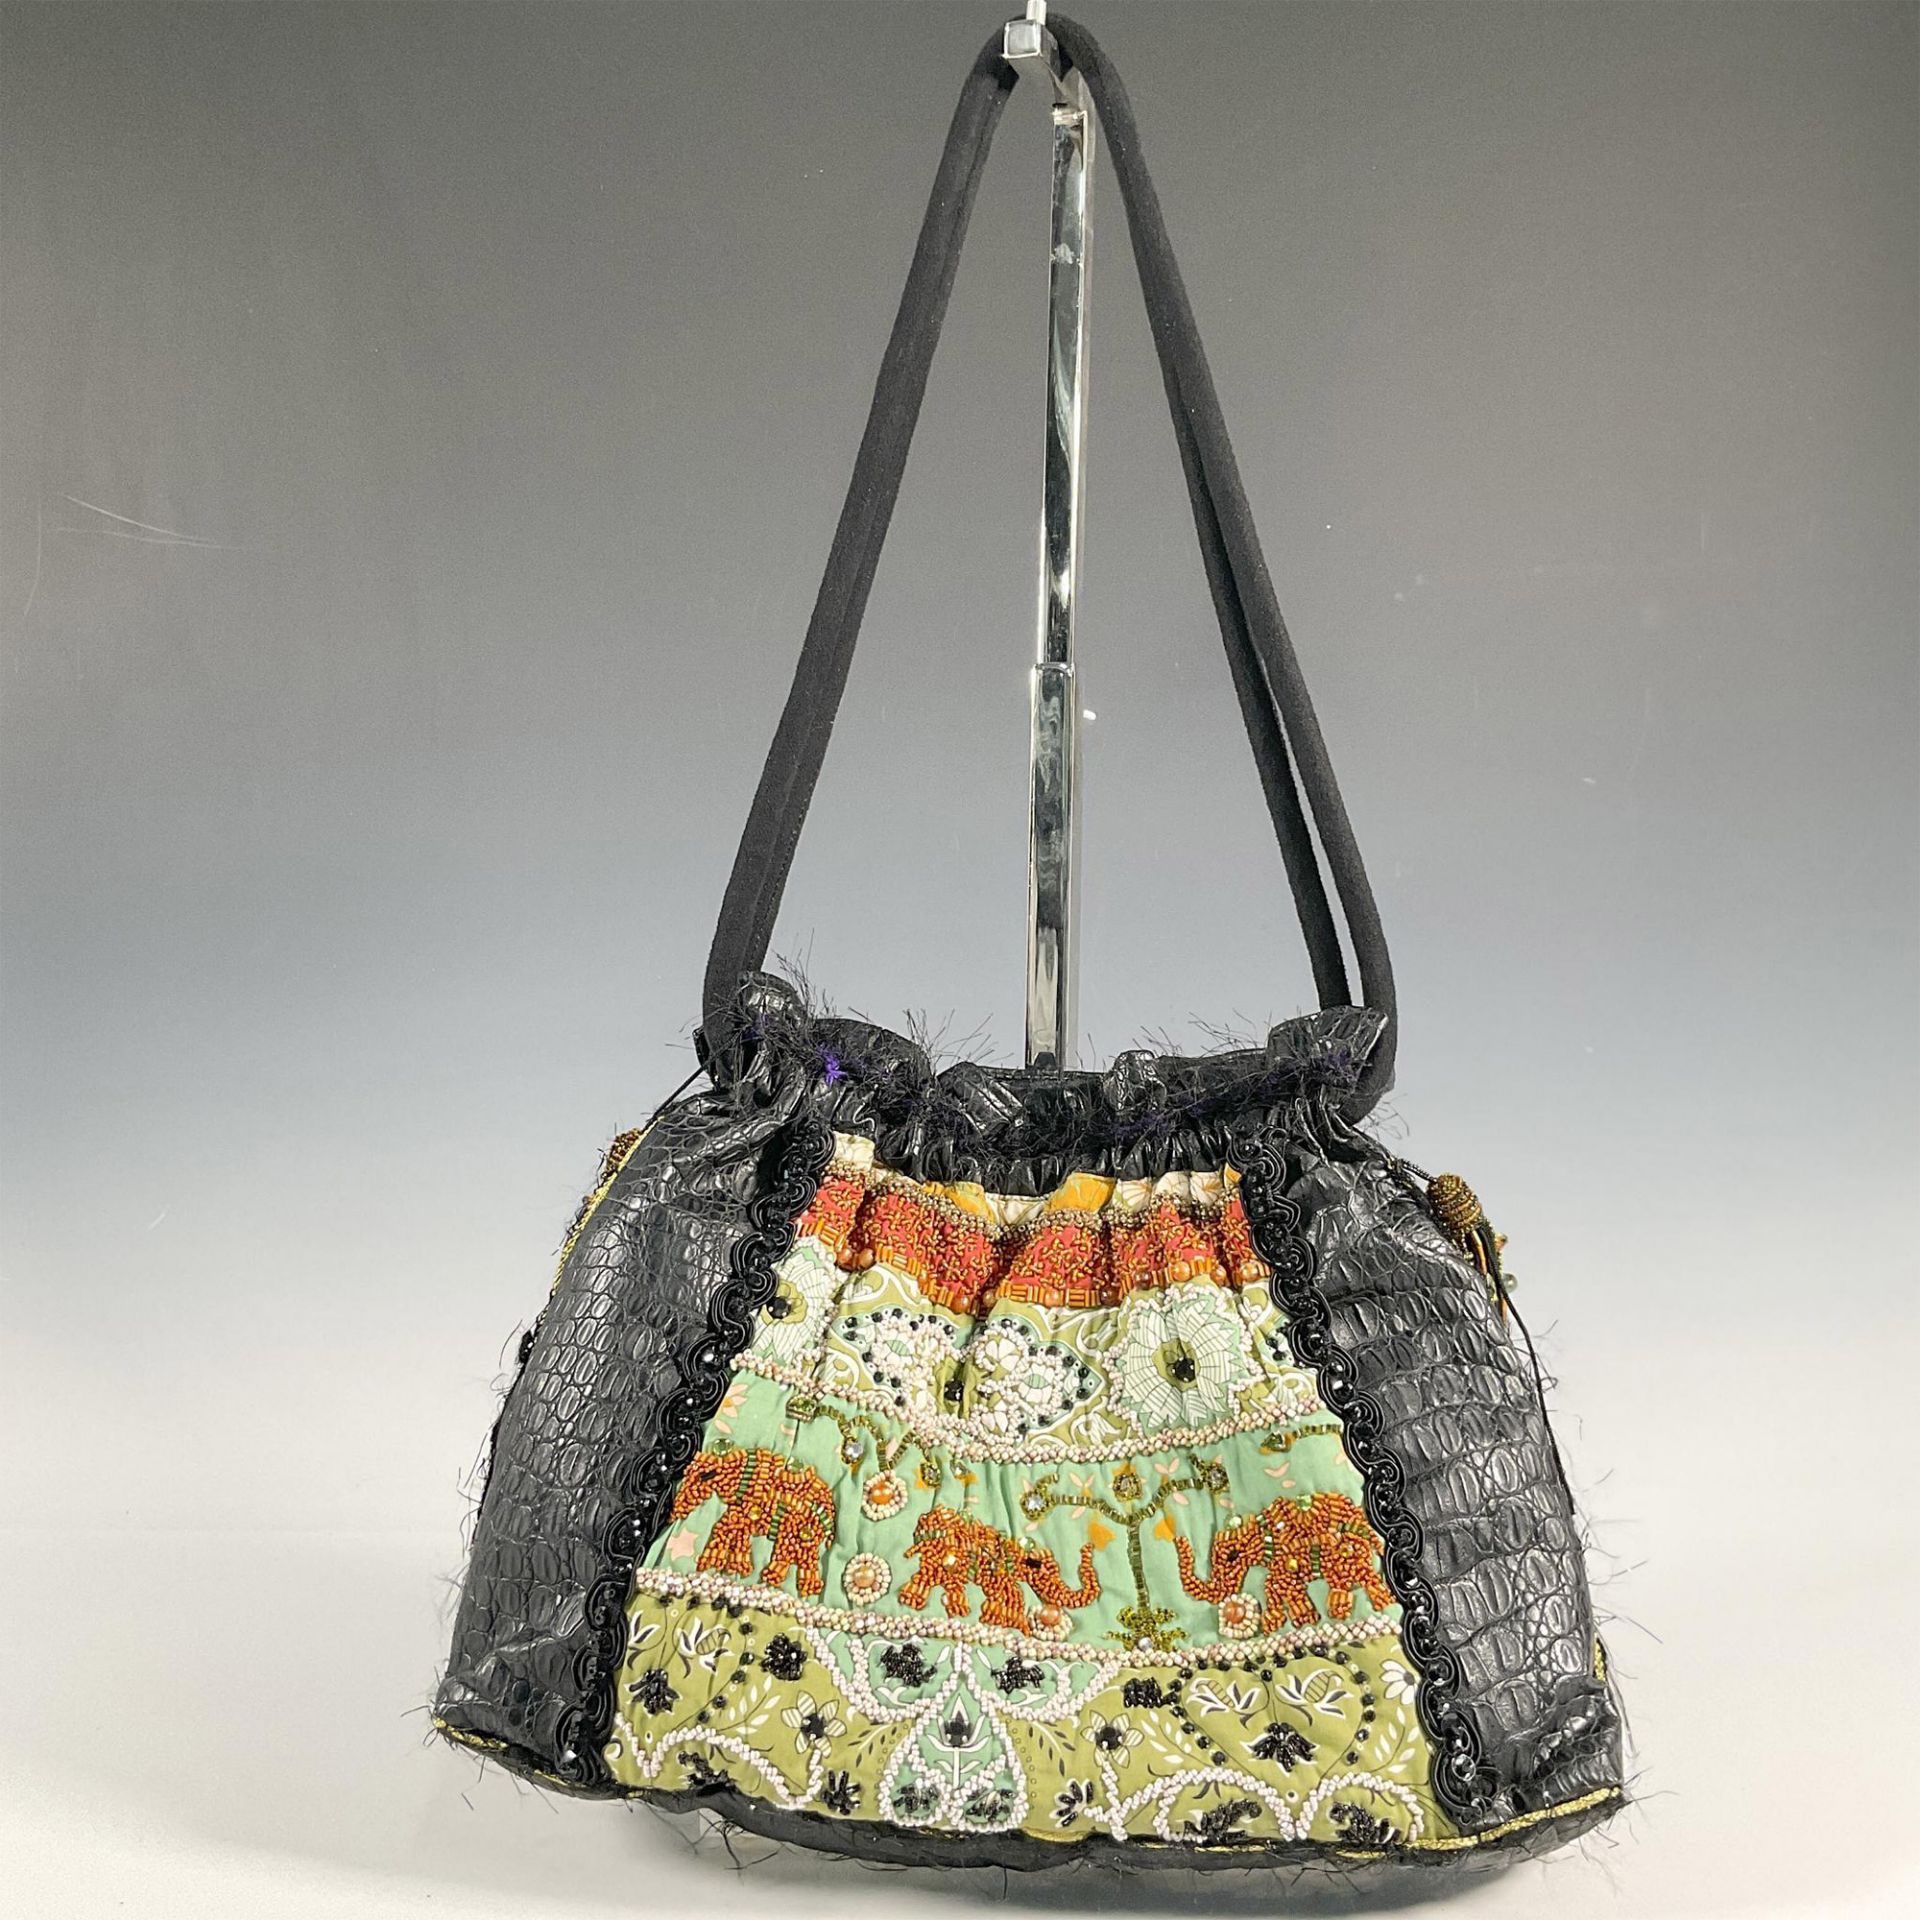 Mary Frances Shoulder Bag, Black Elephant Motif - Image 2 of 4